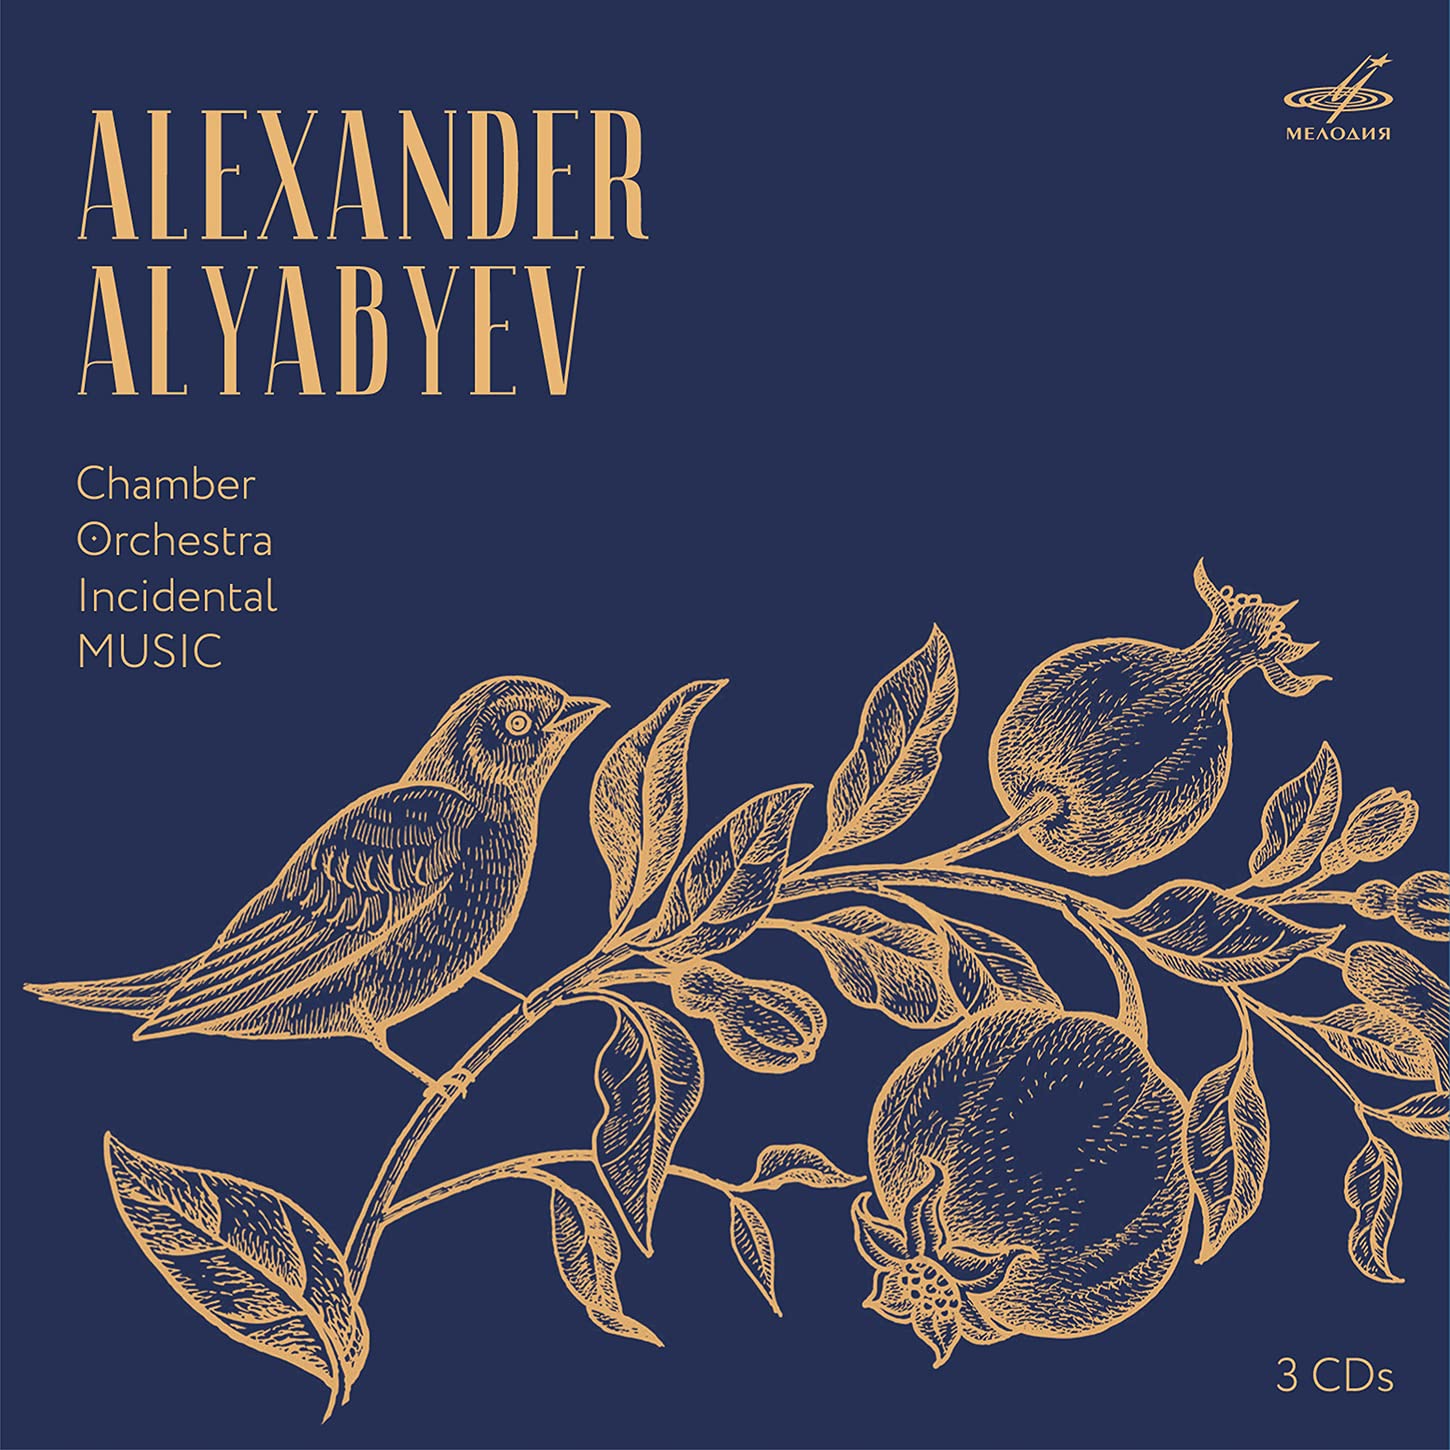 Audio Cd Alexander Alyabyev - Chamber, Orchestra, Incidental Music (3 Cd) NUOVO SIGILLATO, EDIZIONE DEL 24/09/2021 SUBITO DISPONIBILE